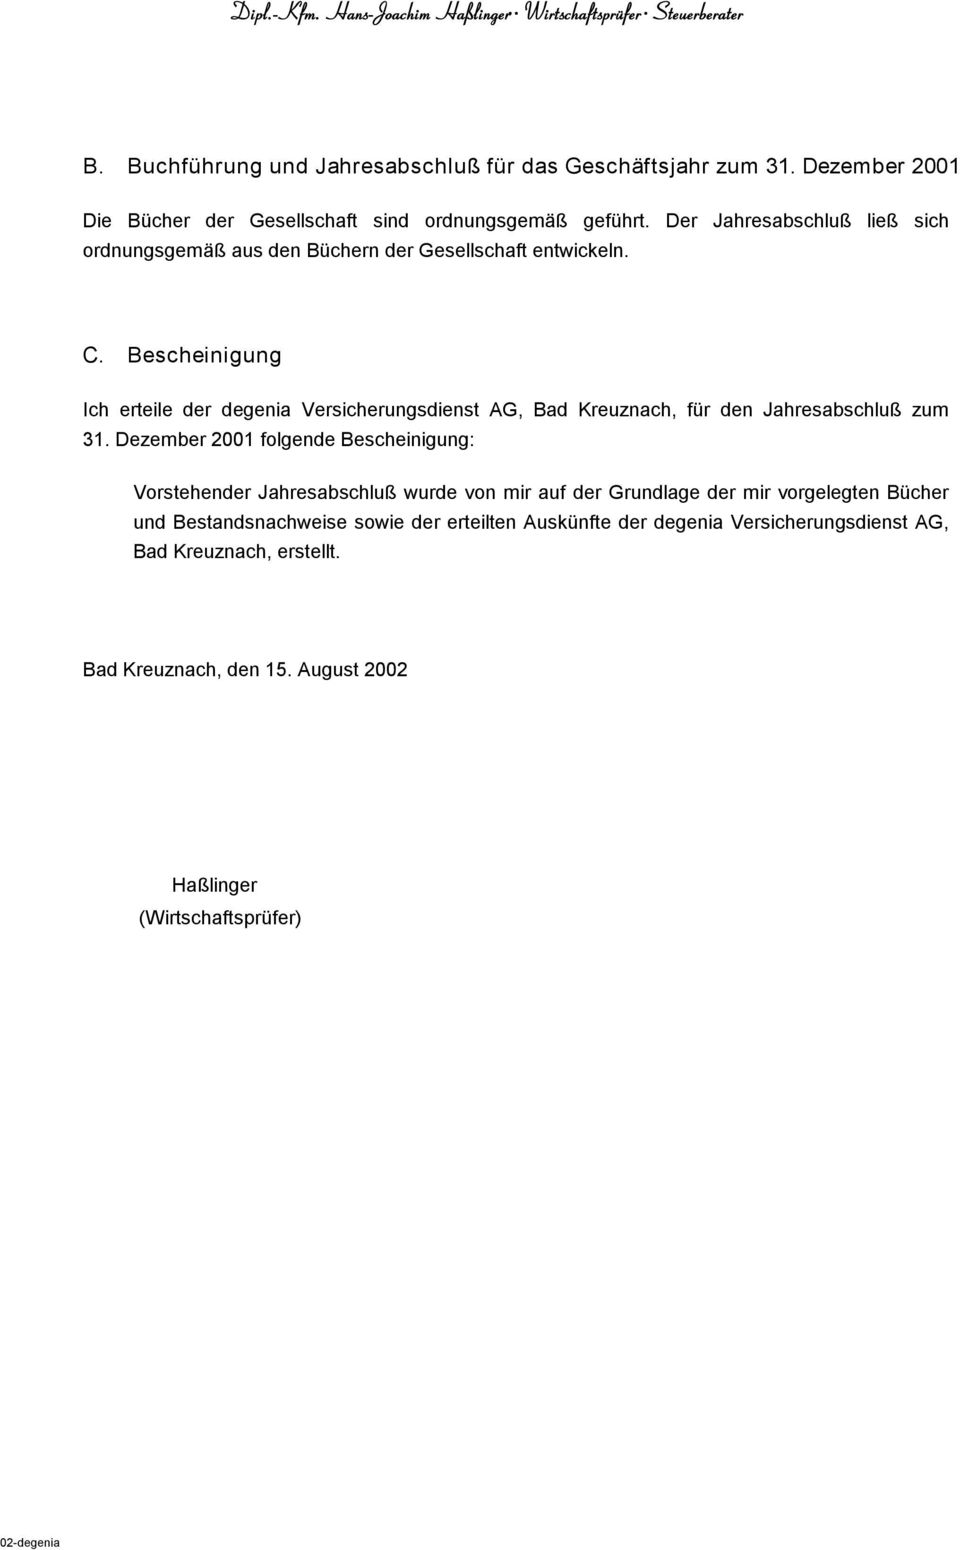 Bescheinigung Ich erteile der degenia Versicherungsdienst AG, Bad Kreuznach, für den Jahresabschluß zum 31.